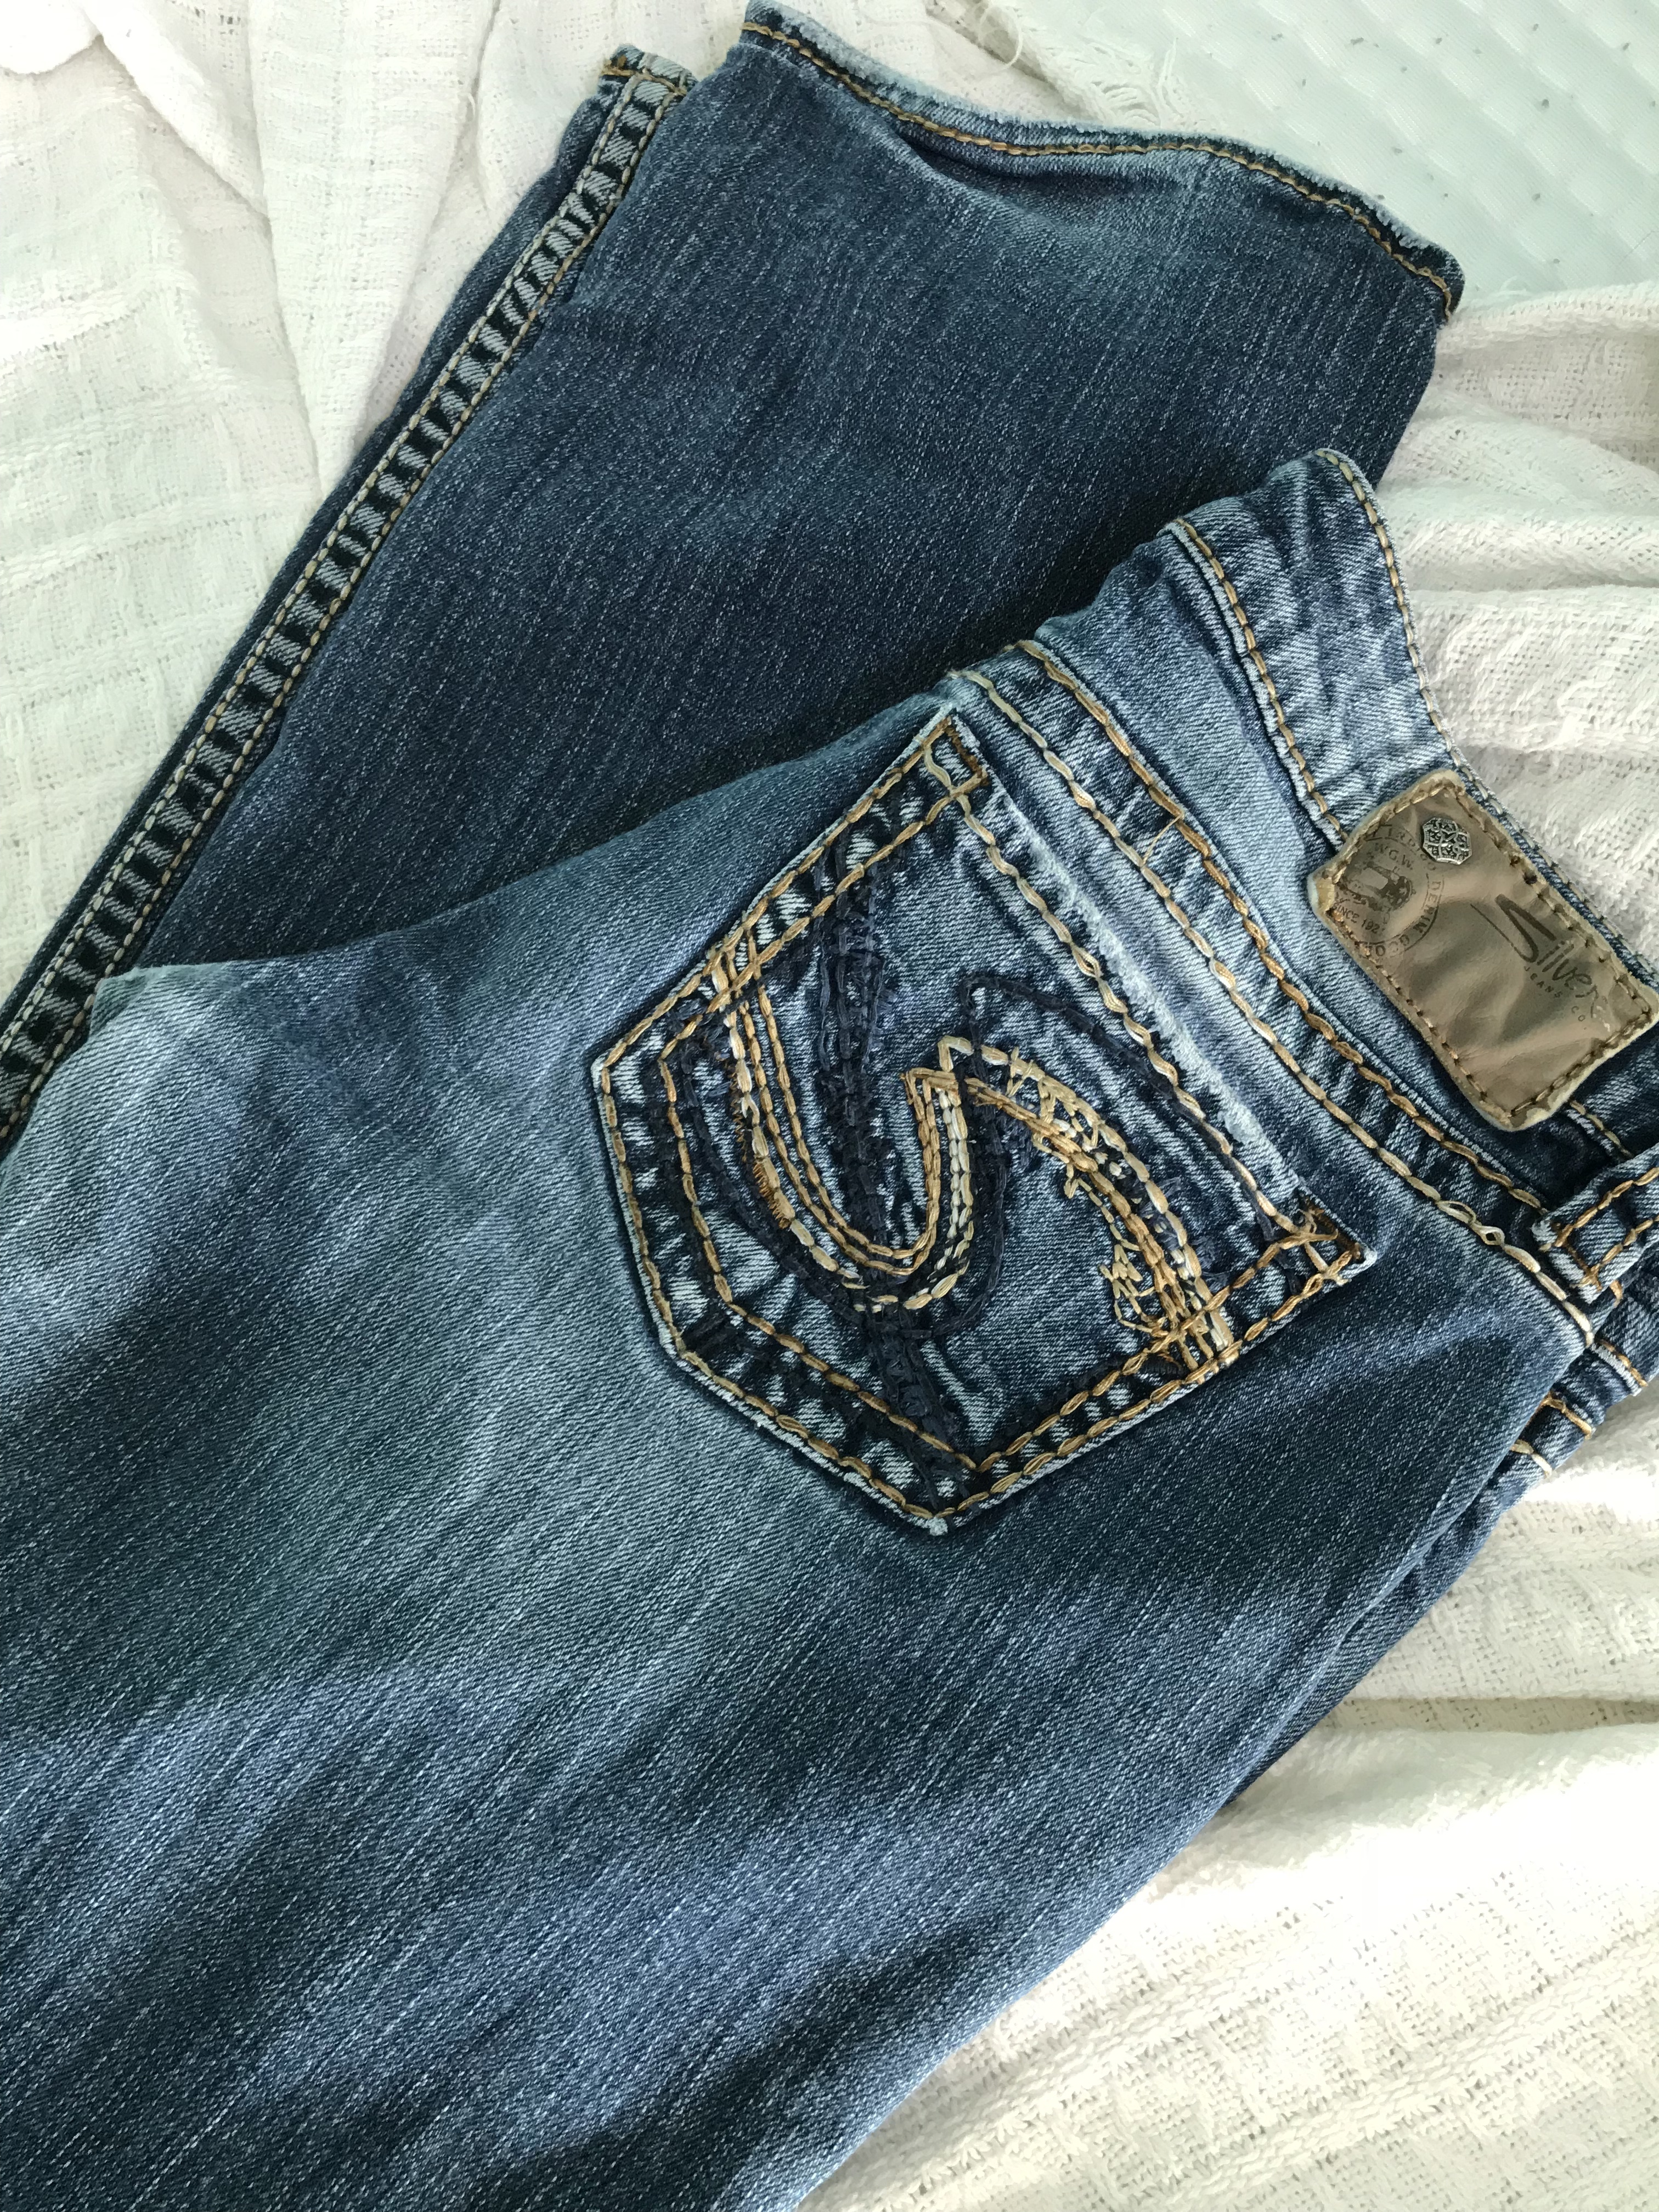 Taille benachbart Überzeugung silver lola jeans Transport Damm Wohnzimmer